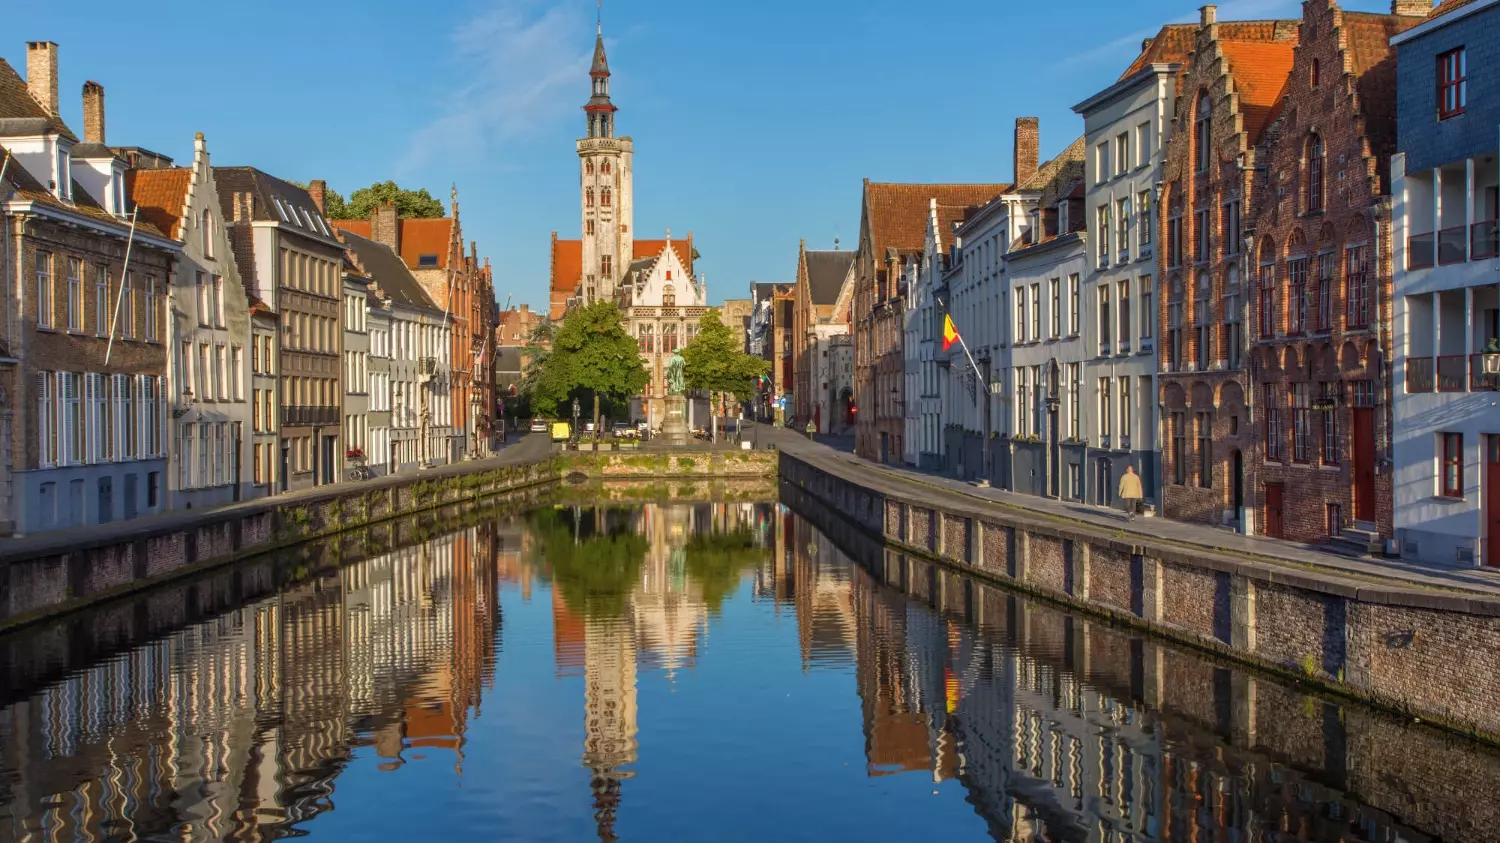 Брюгге славится своими каналами, мощенными брусчаткой улицами и средневековыми зданиями